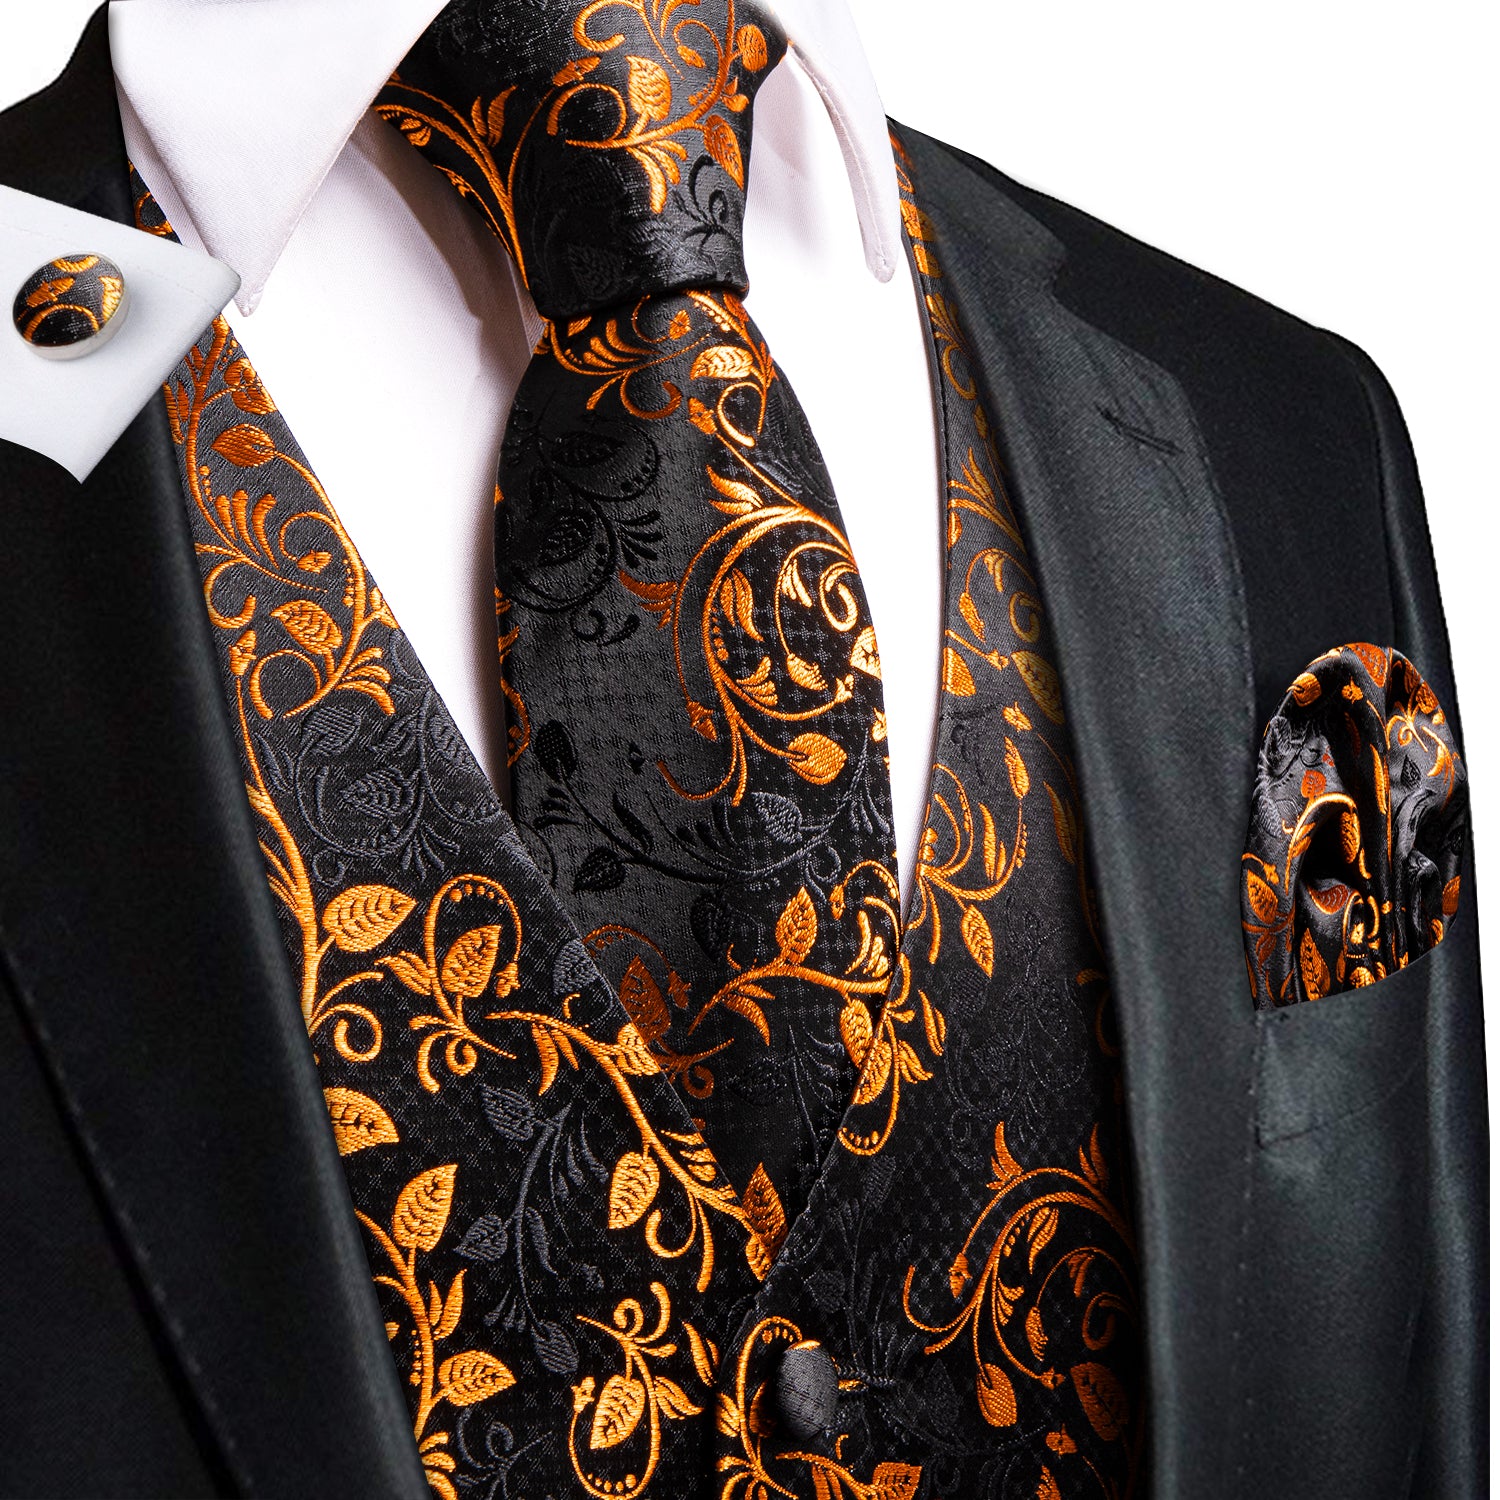 Black Golden Leaves Silk Men's Vest Hanky Cufflinks Tie Set Waistcoat Suit Set